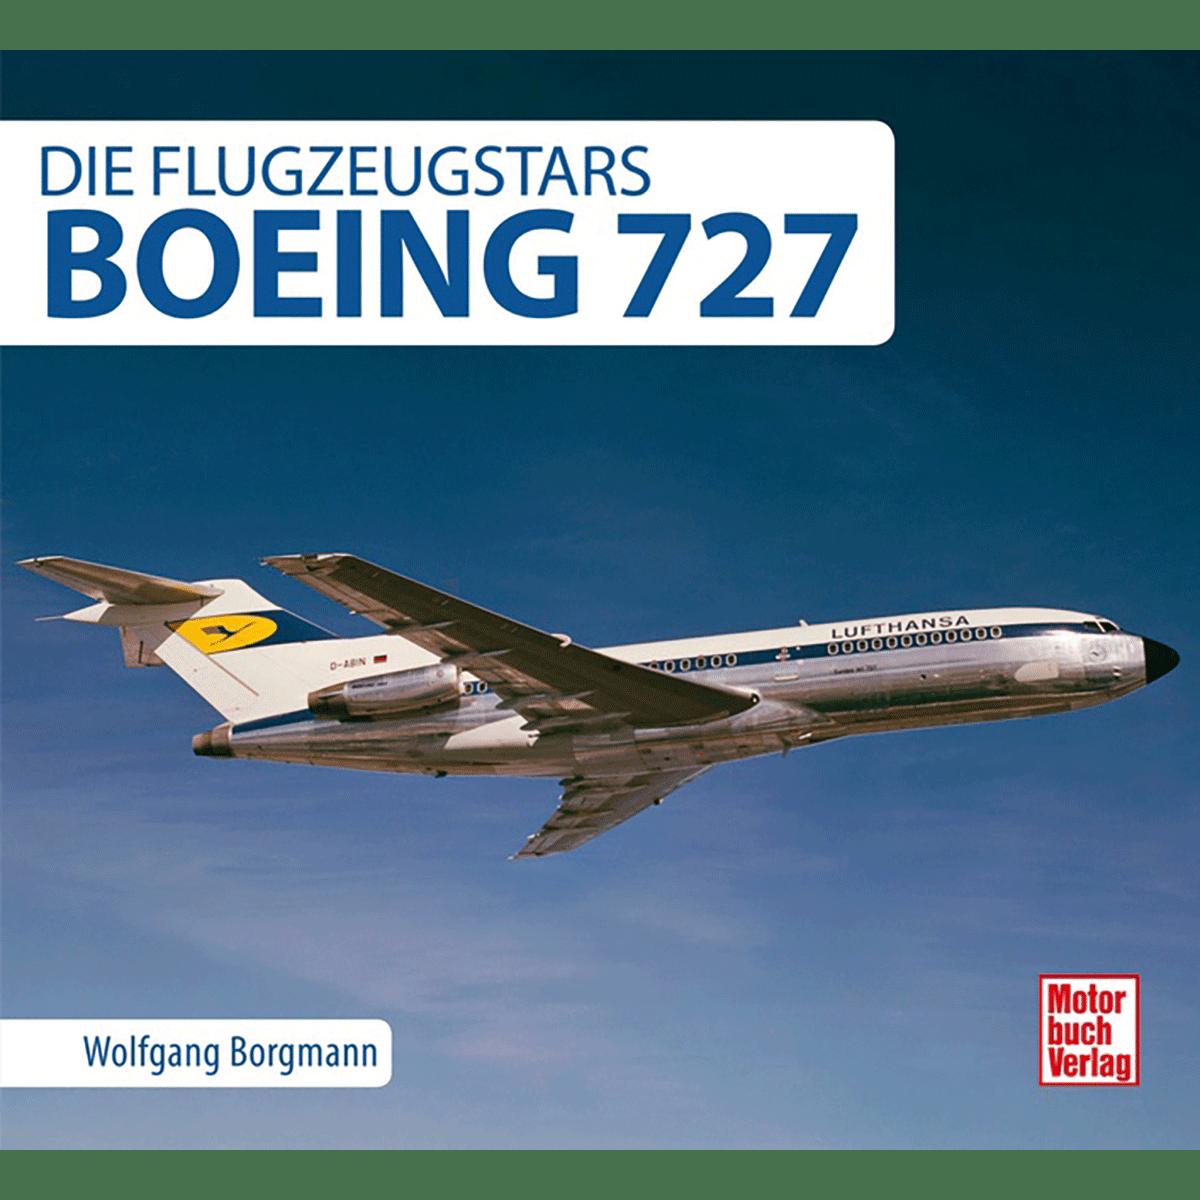 Boeing 727: Die Flugzeugstars - Wolfgang Borgmann